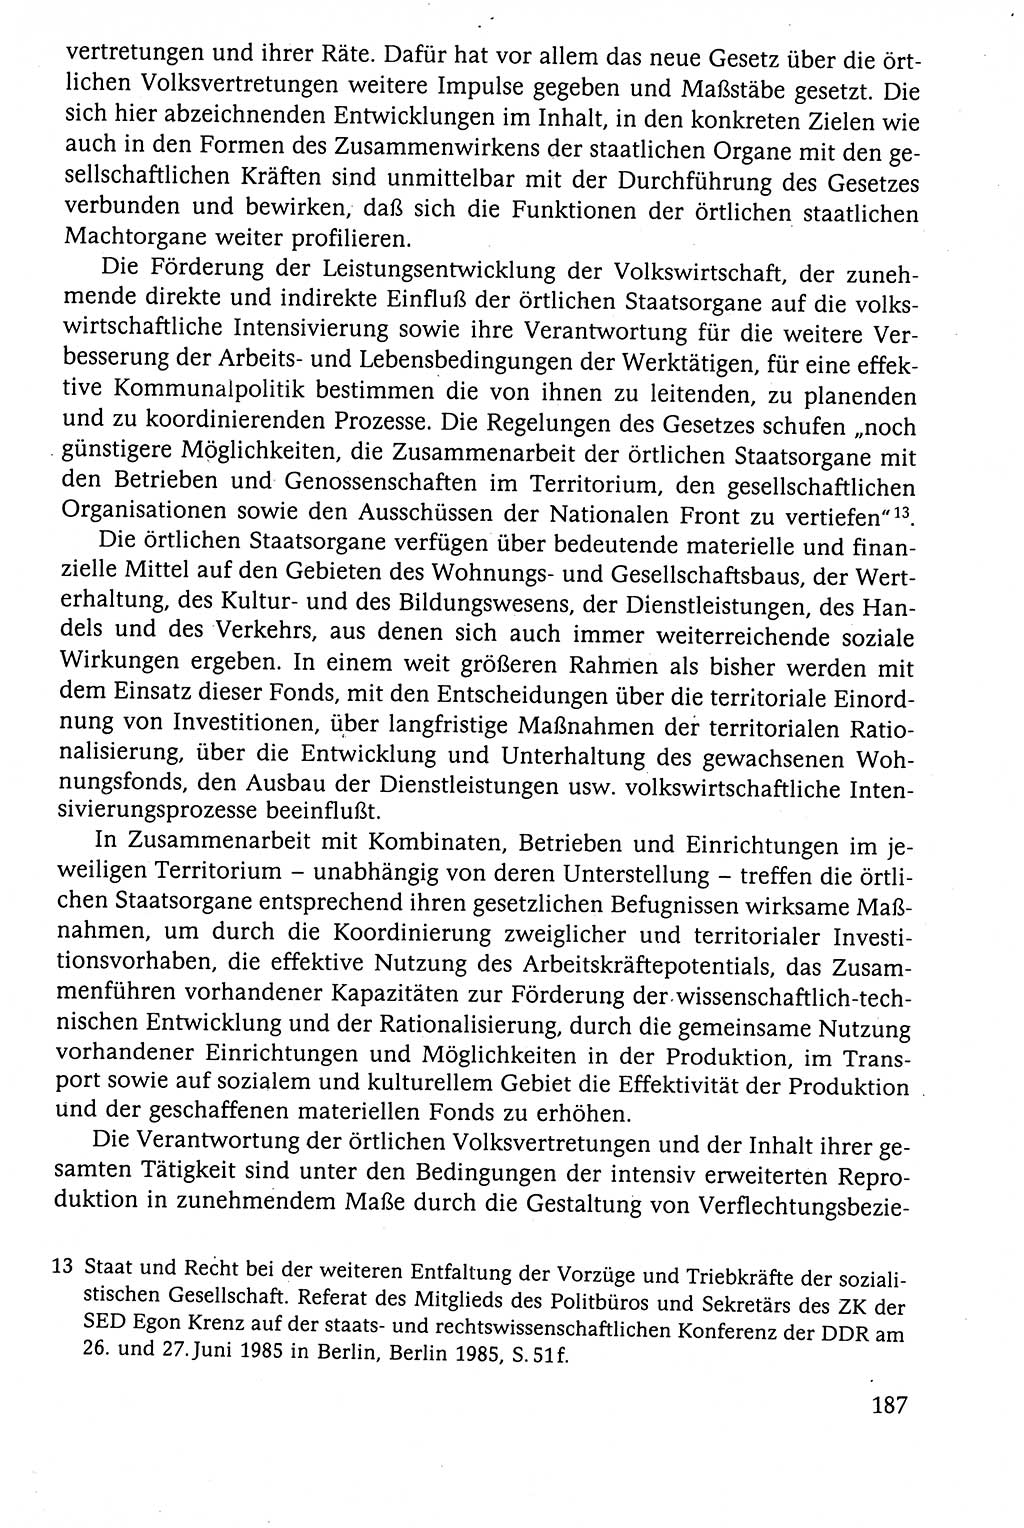 Der Staat im politischen System der DDR (Deutsche Demokratische Republik) 1986, Seite 187 (St. pol. Sys. DDR 1986, S. 187)